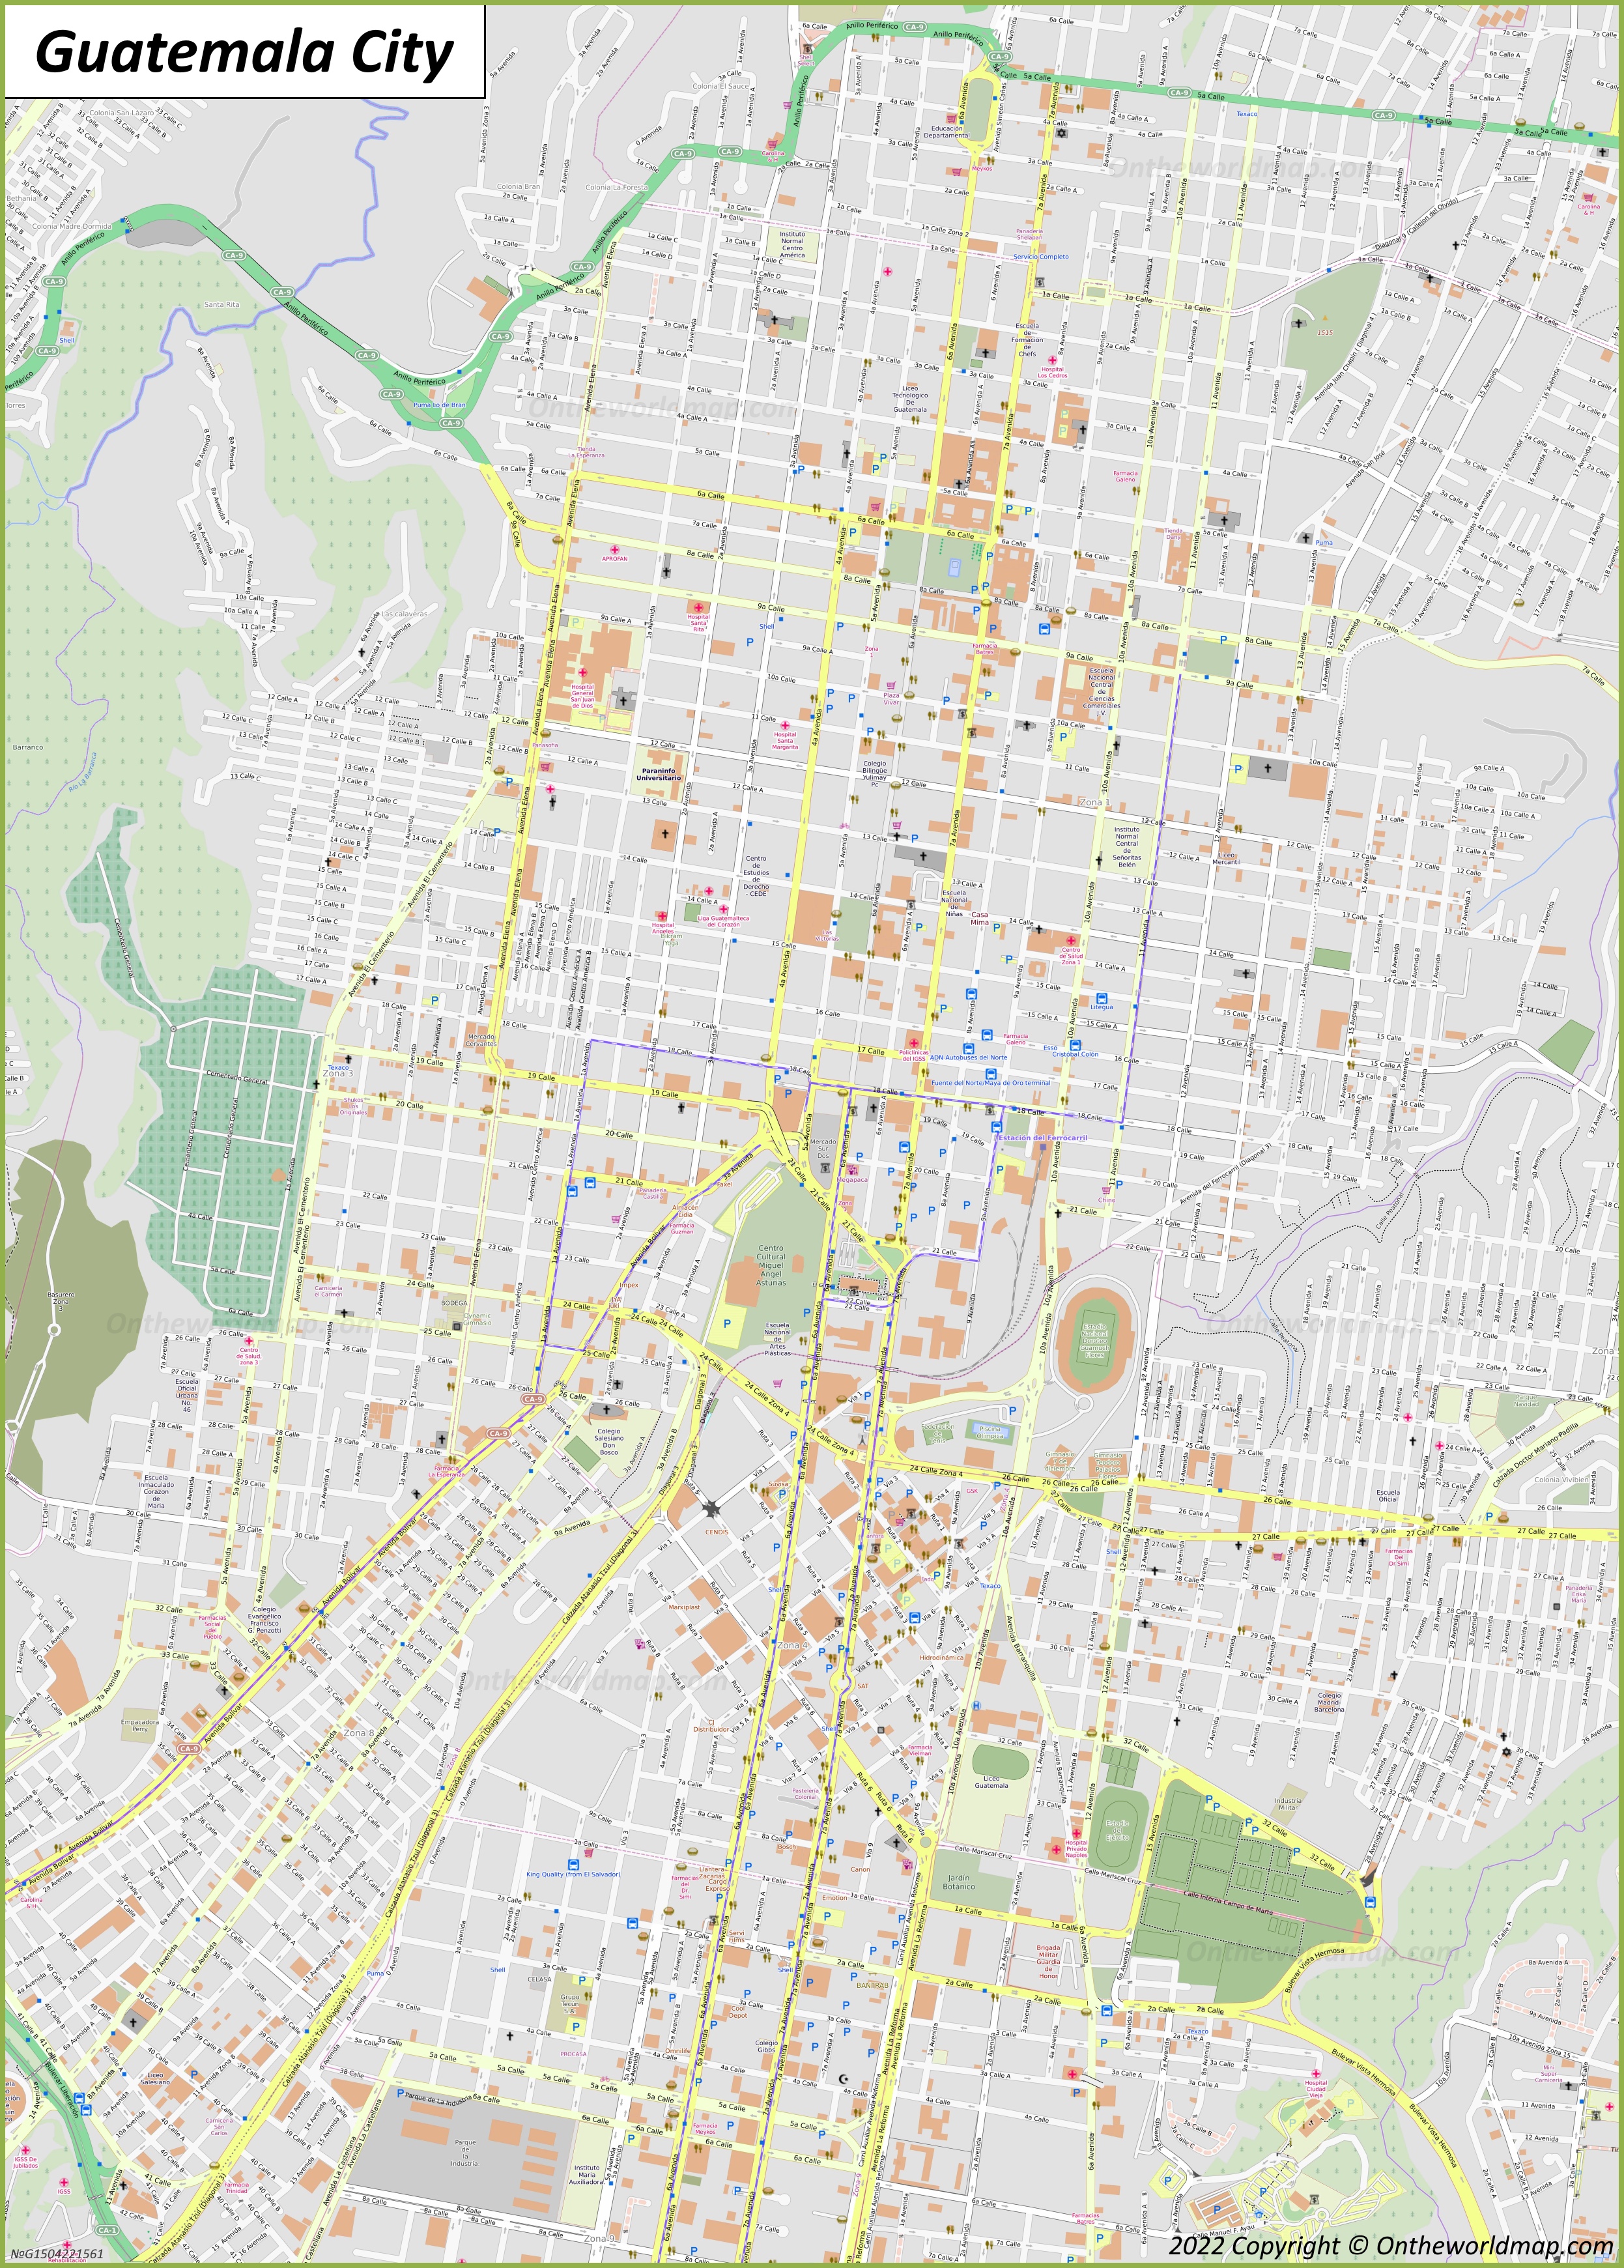 Ciudad de Guatemala - Mapa del centro